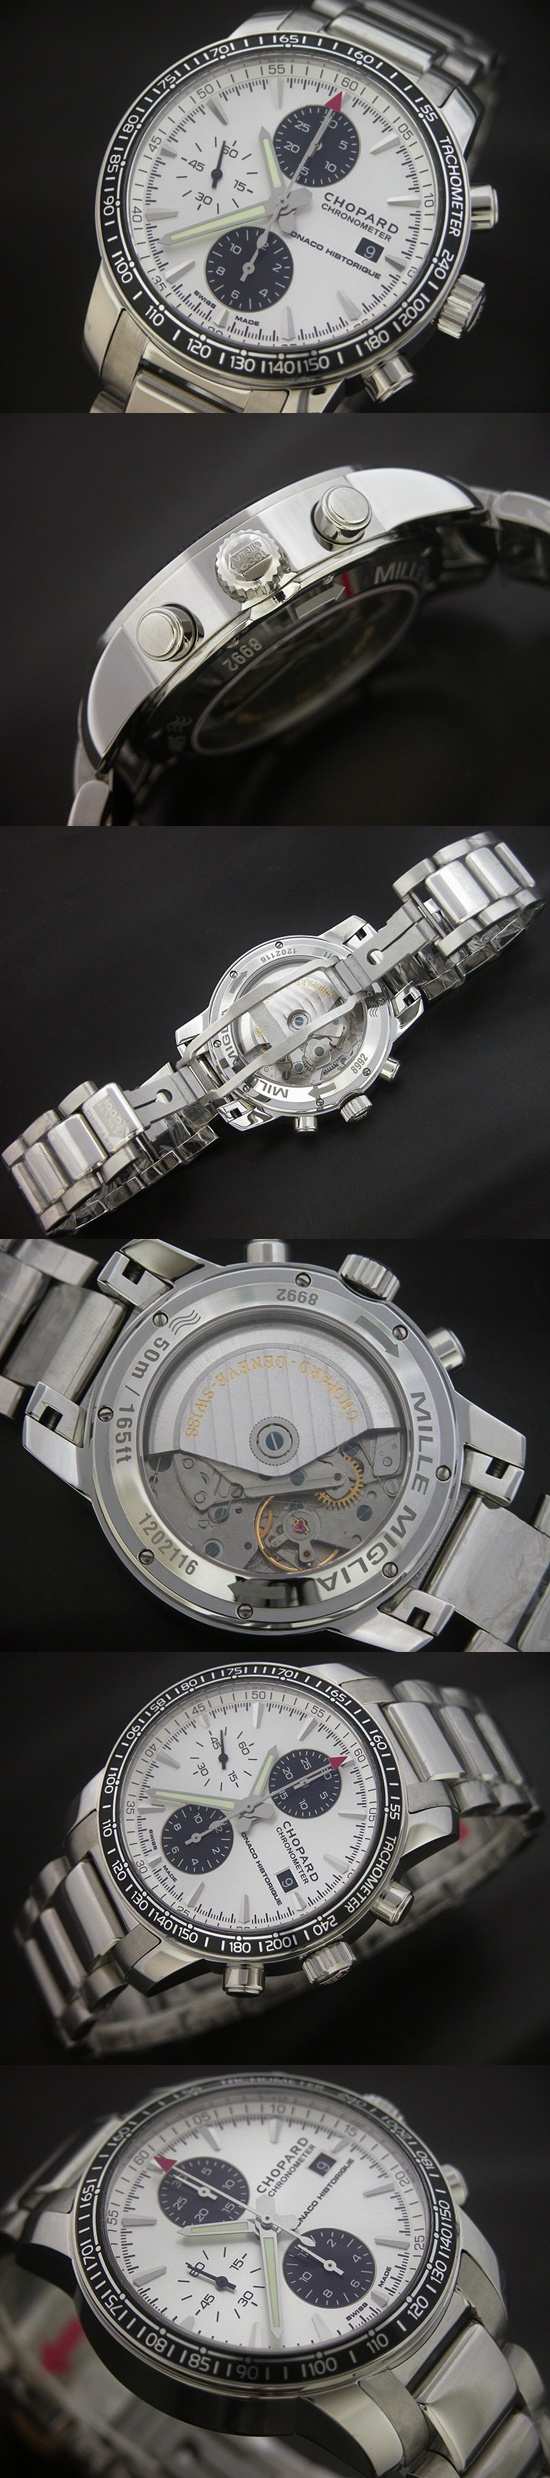 おしゃれなブランド時計がショパール-CHOPARD-ミッレミリア-168992-3012-ai 男性用腕時計を提供します.